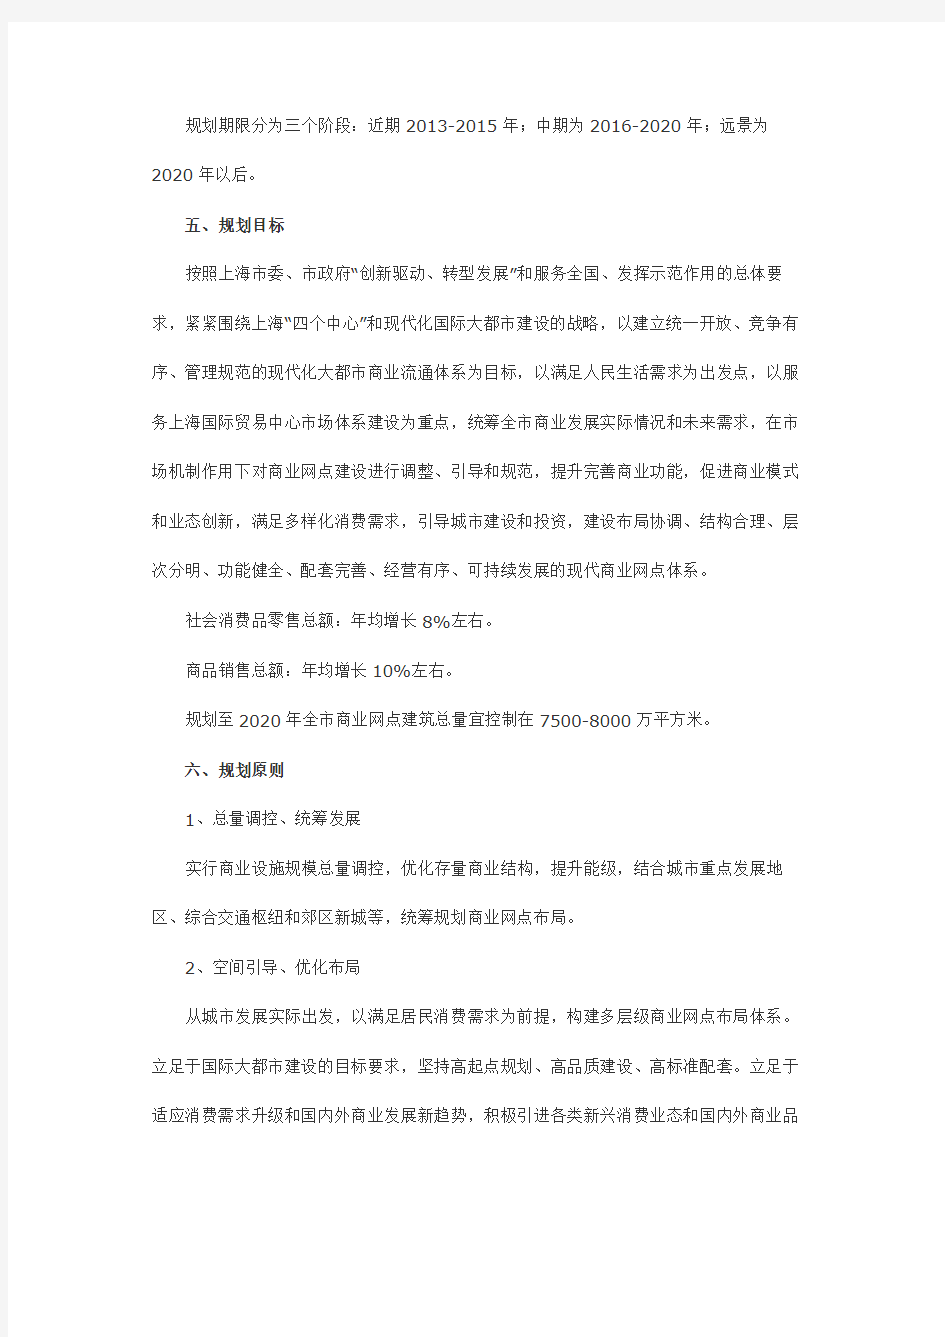 《上海市商业网点布局规划(2013-2020)》规划方案